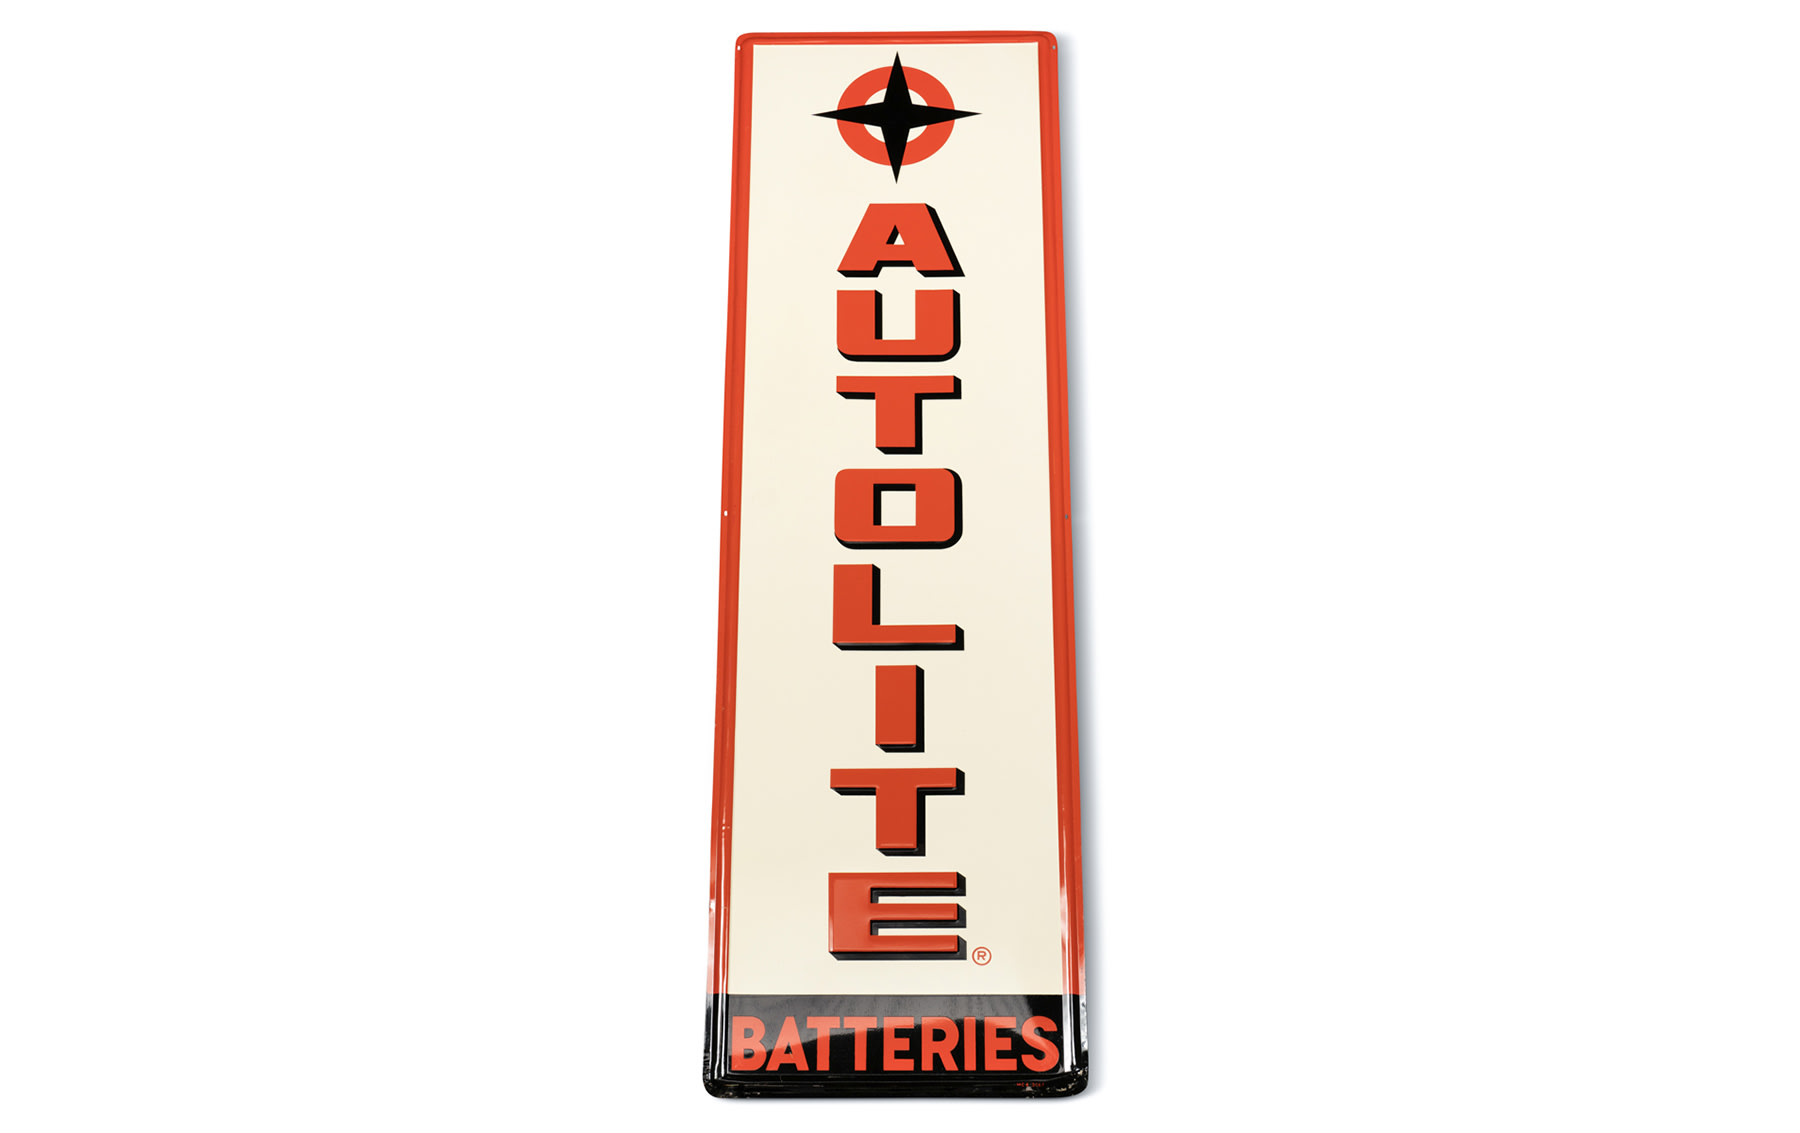 Autolite Batteries Sign